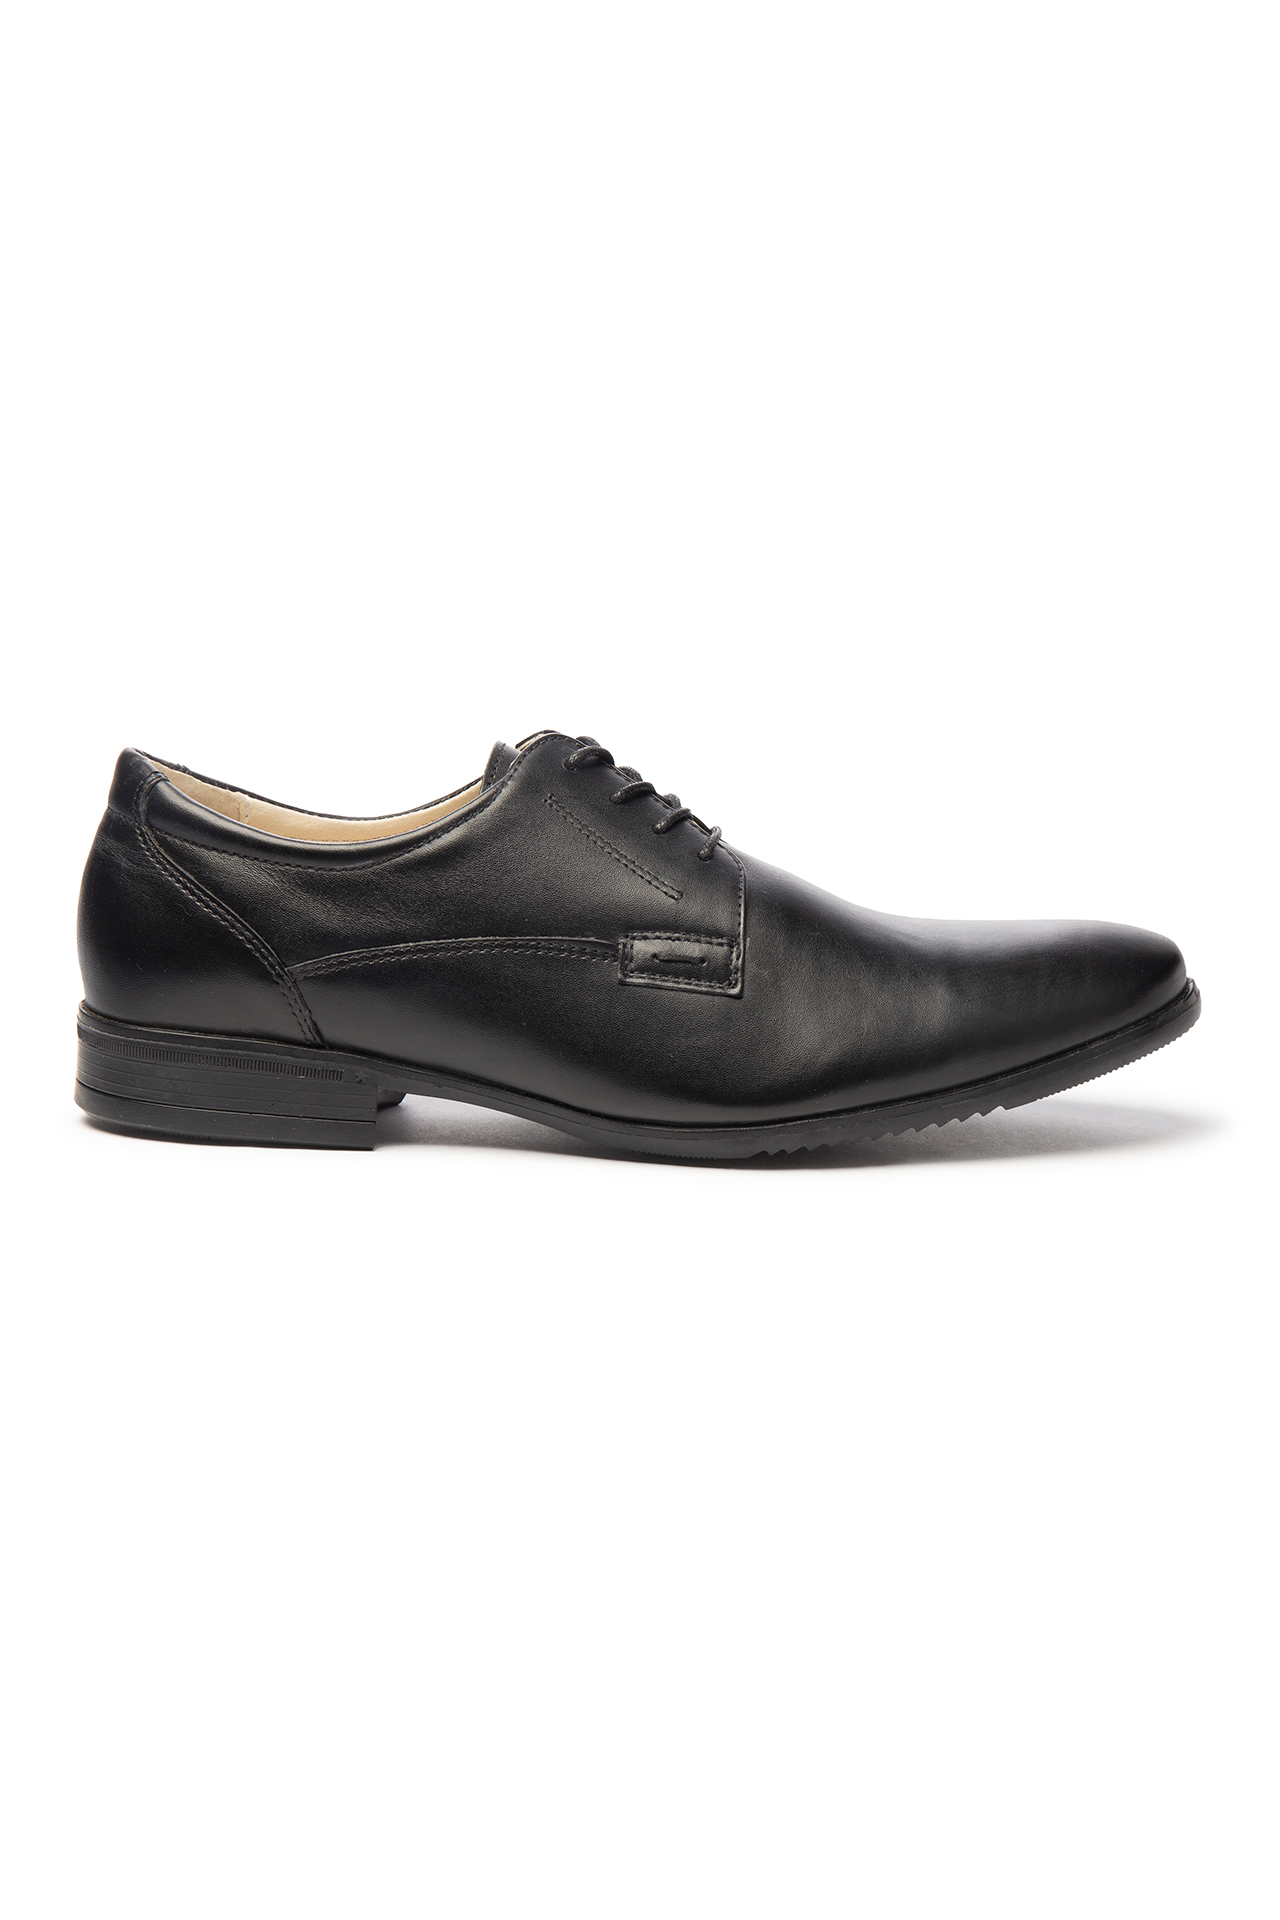 Туфли БУТЕКС классические мужские мод 5359 черные